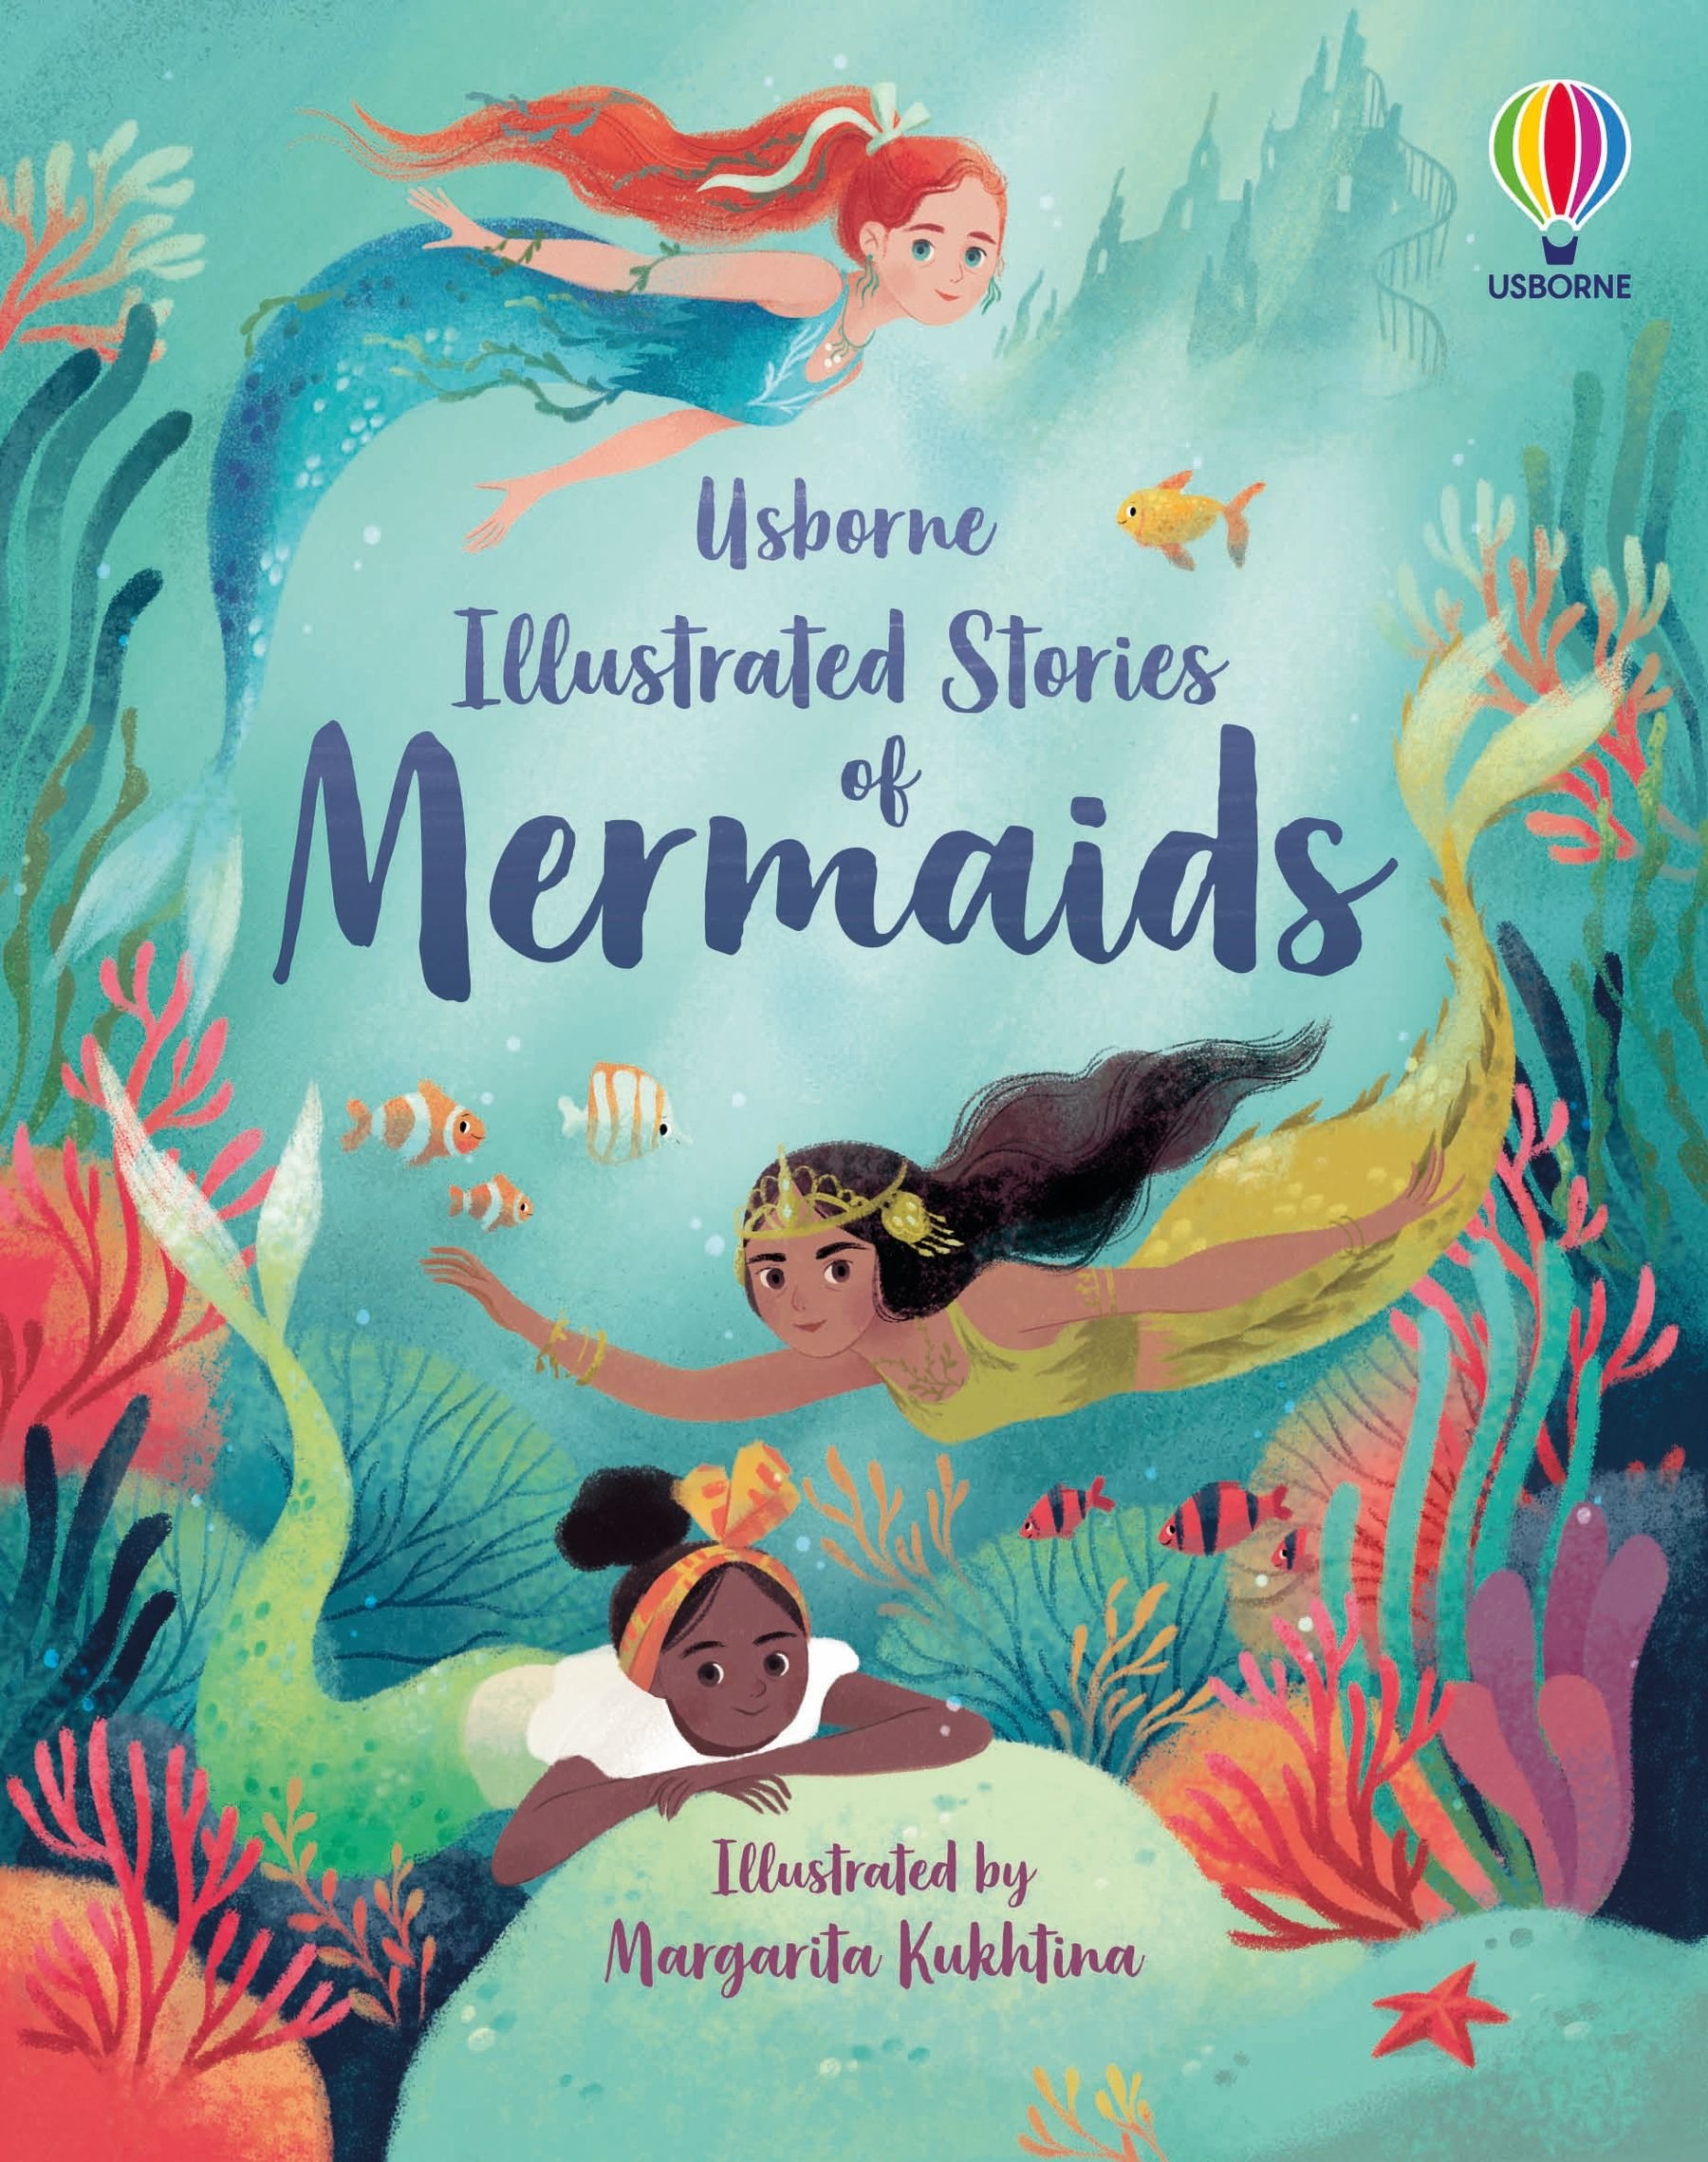 Mermaids illustrated